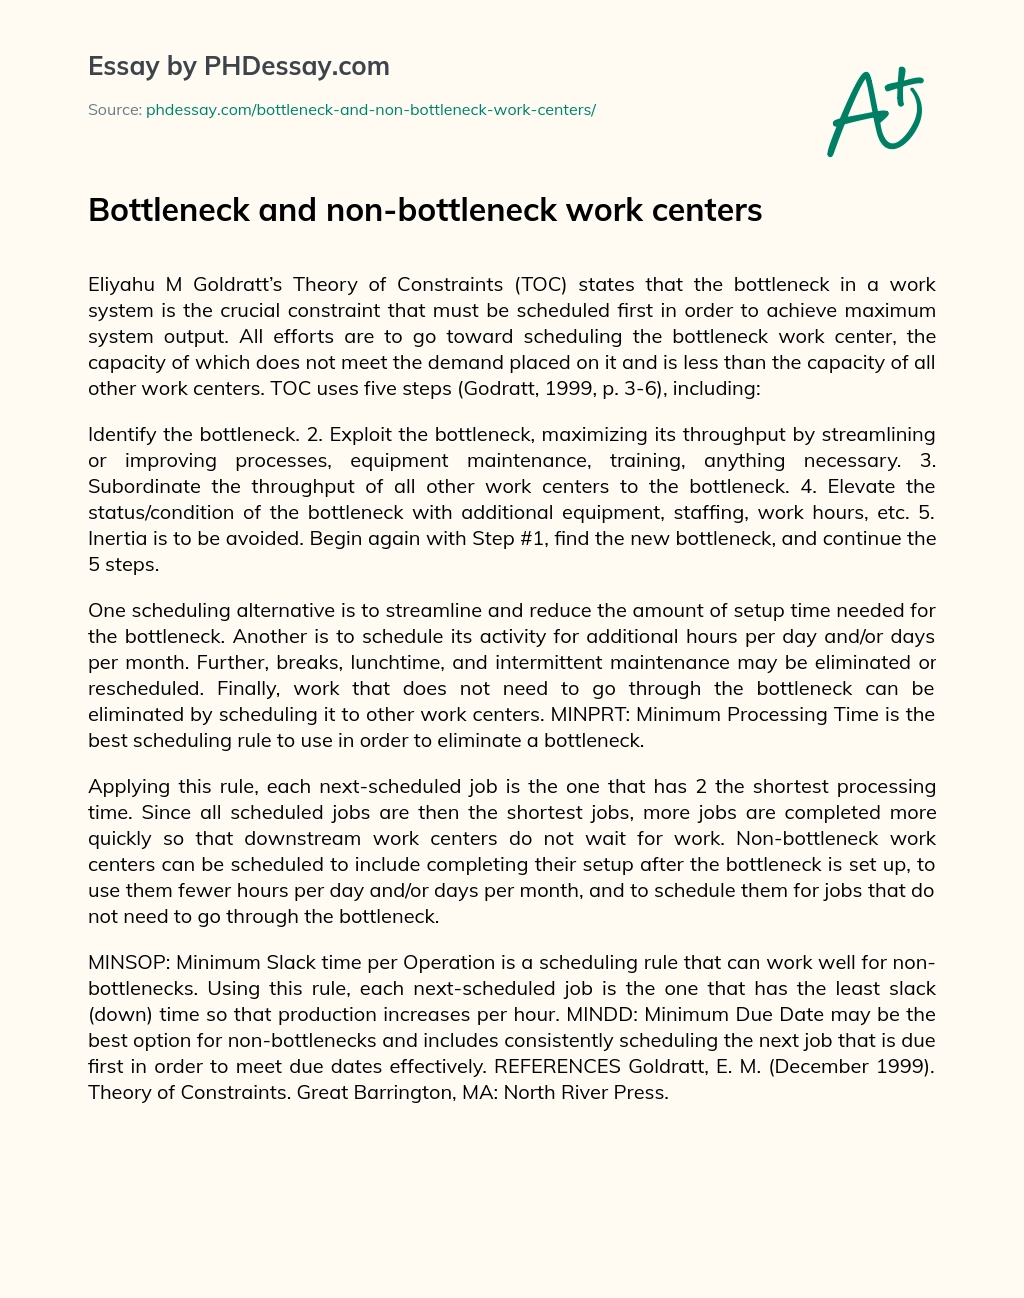 Bottleneck and non-bottleneck work centers essay